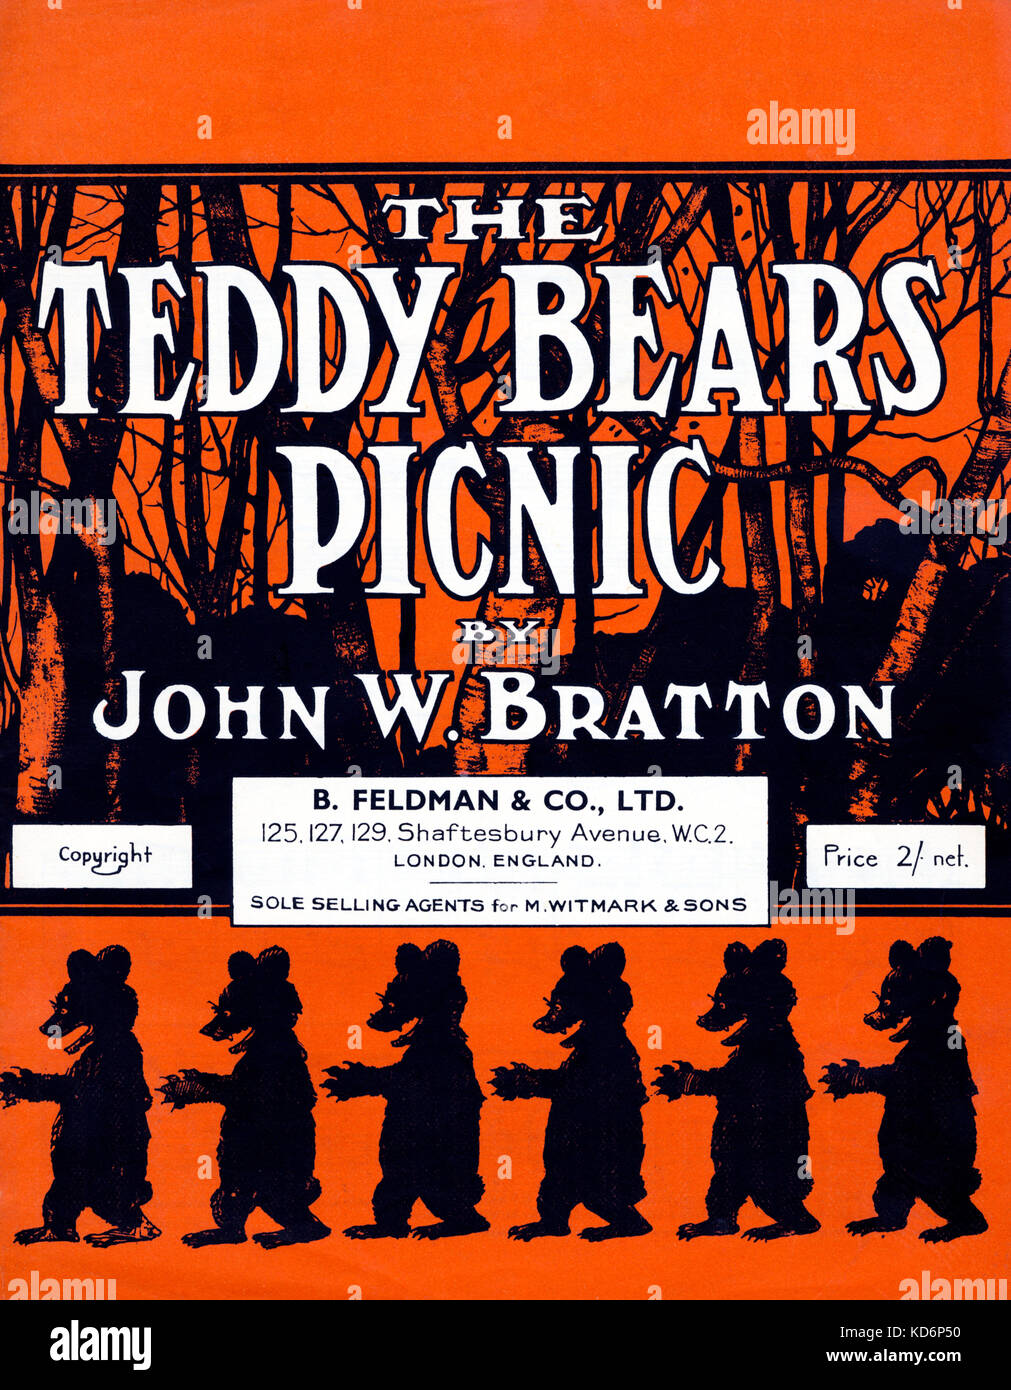 Il Teddy Bear Picnic cliente coperchio / foglio di musica da John W Bratton pubblicato da B. Feldman, Londra Foto Stock